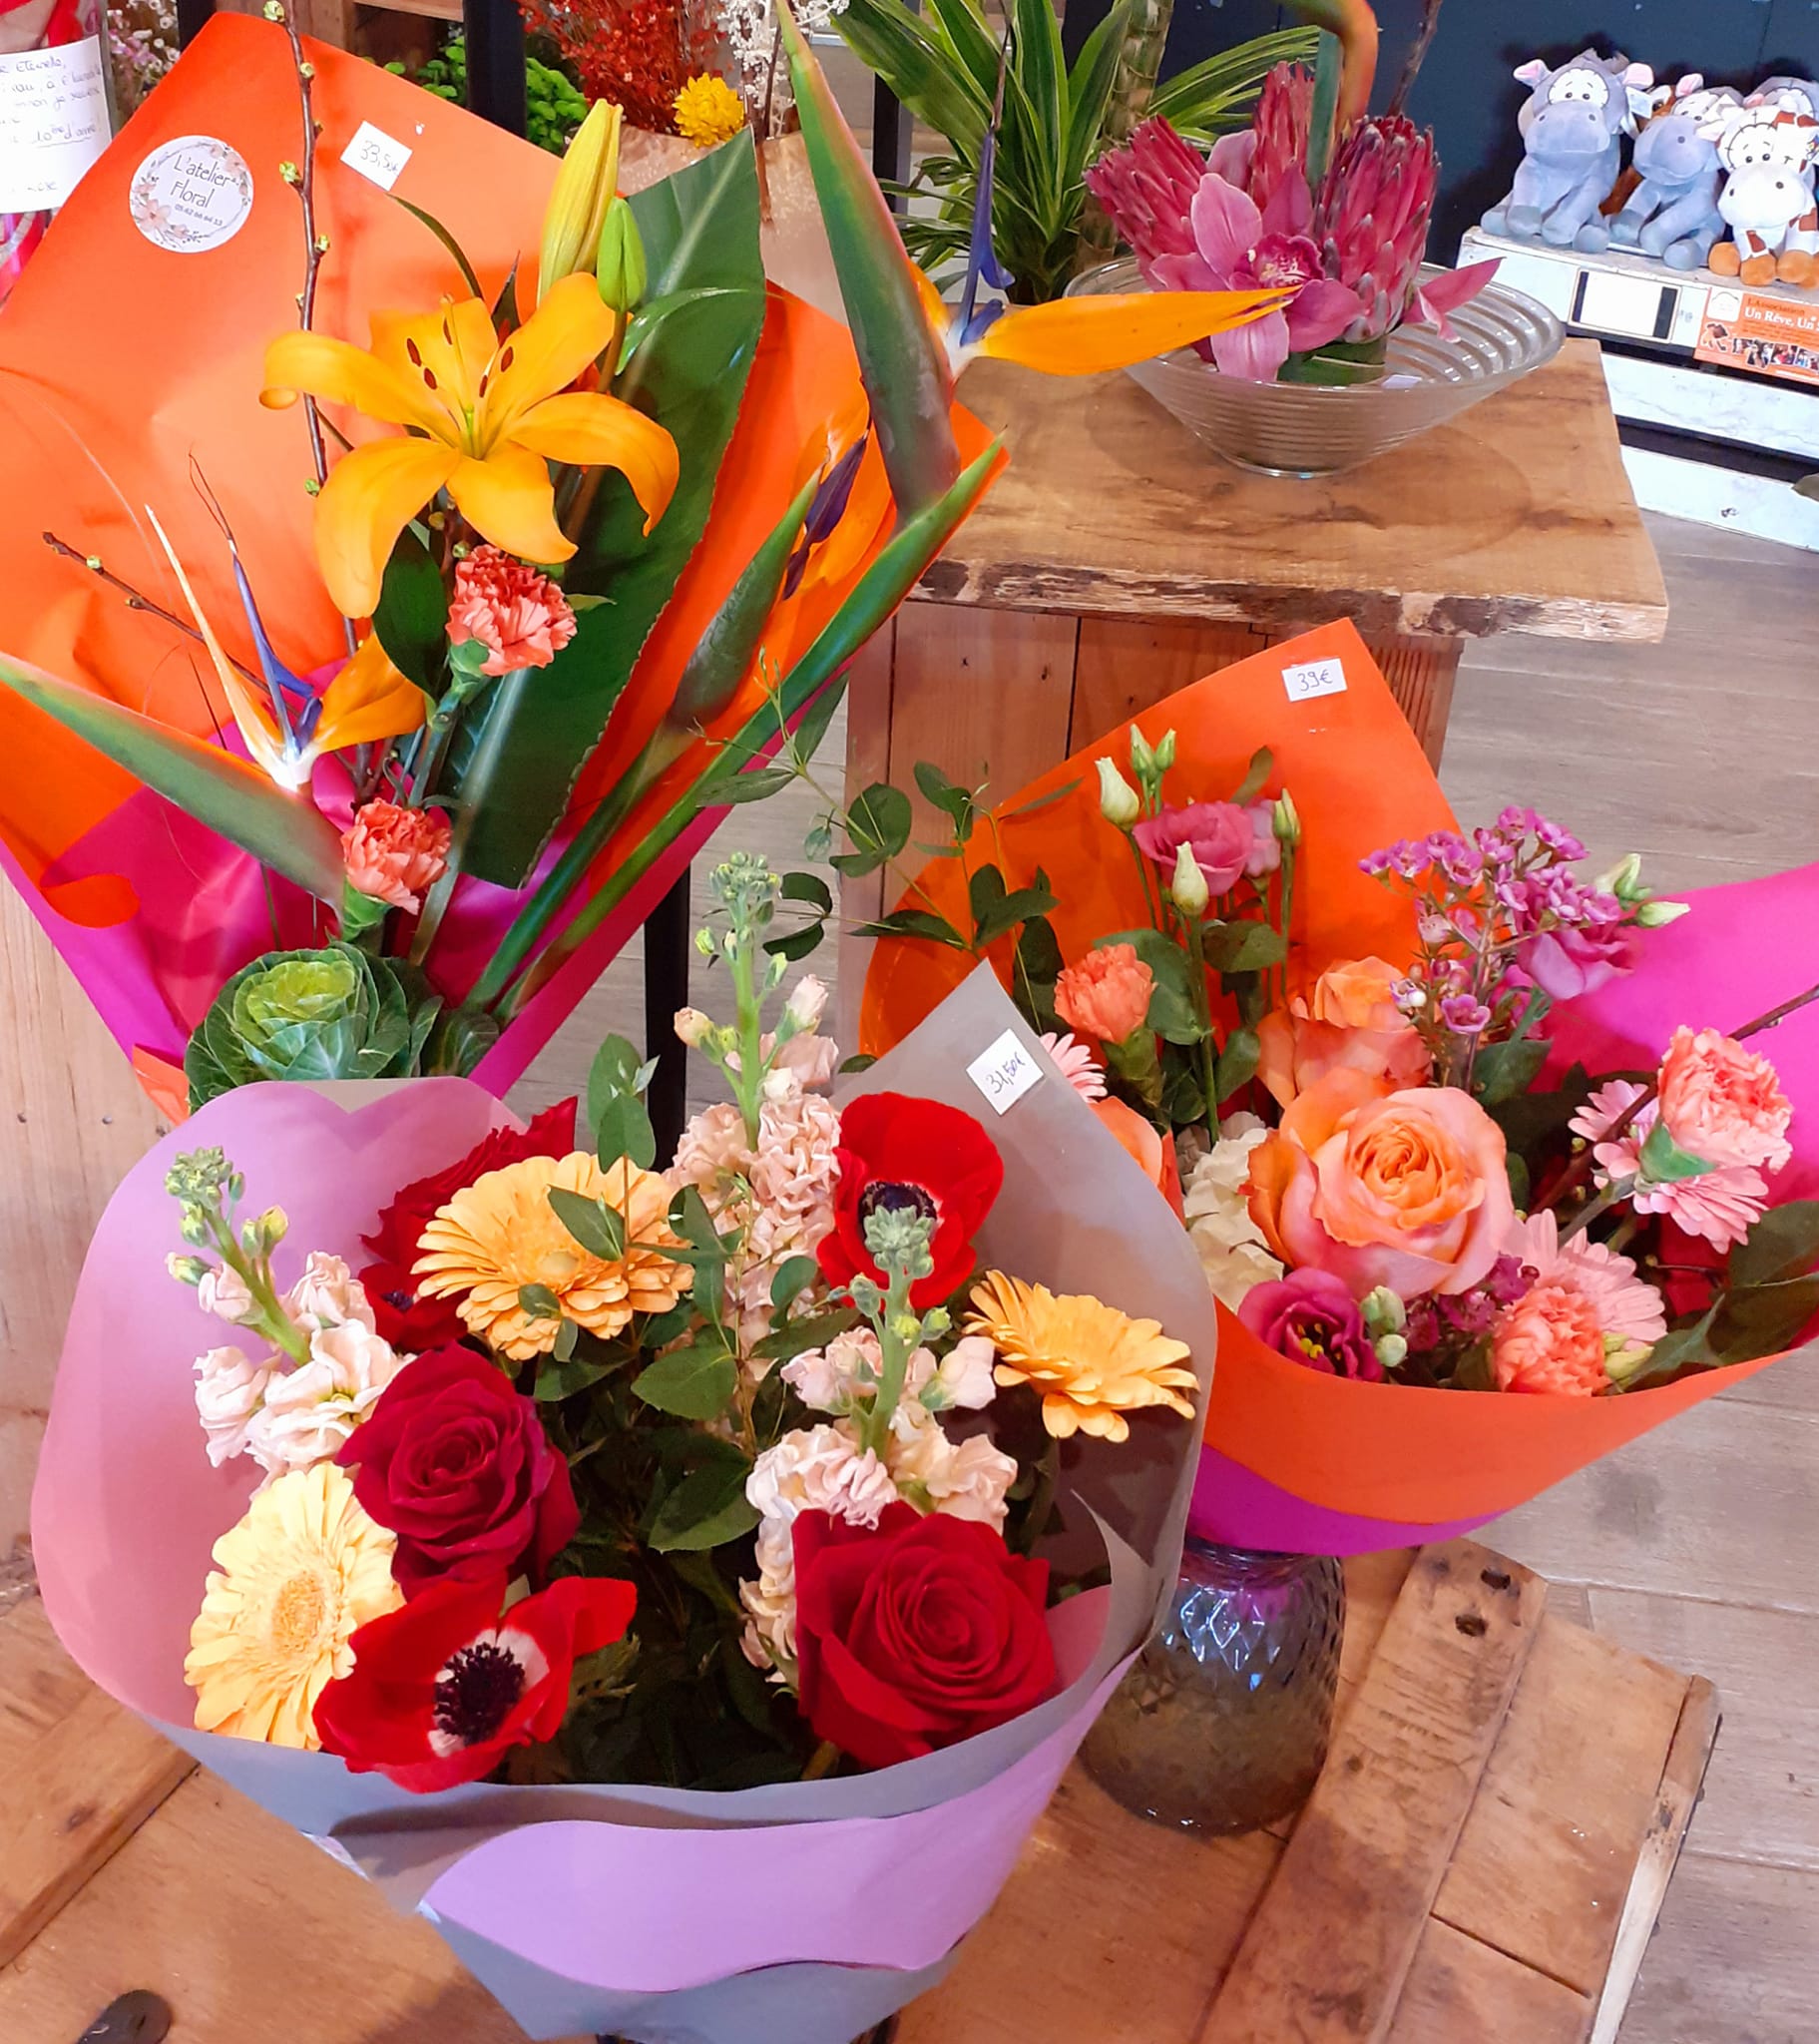 Pour vos compositions florales à Mirande et bouquets de fleurs, demandez conseil à L'Atelier Floral